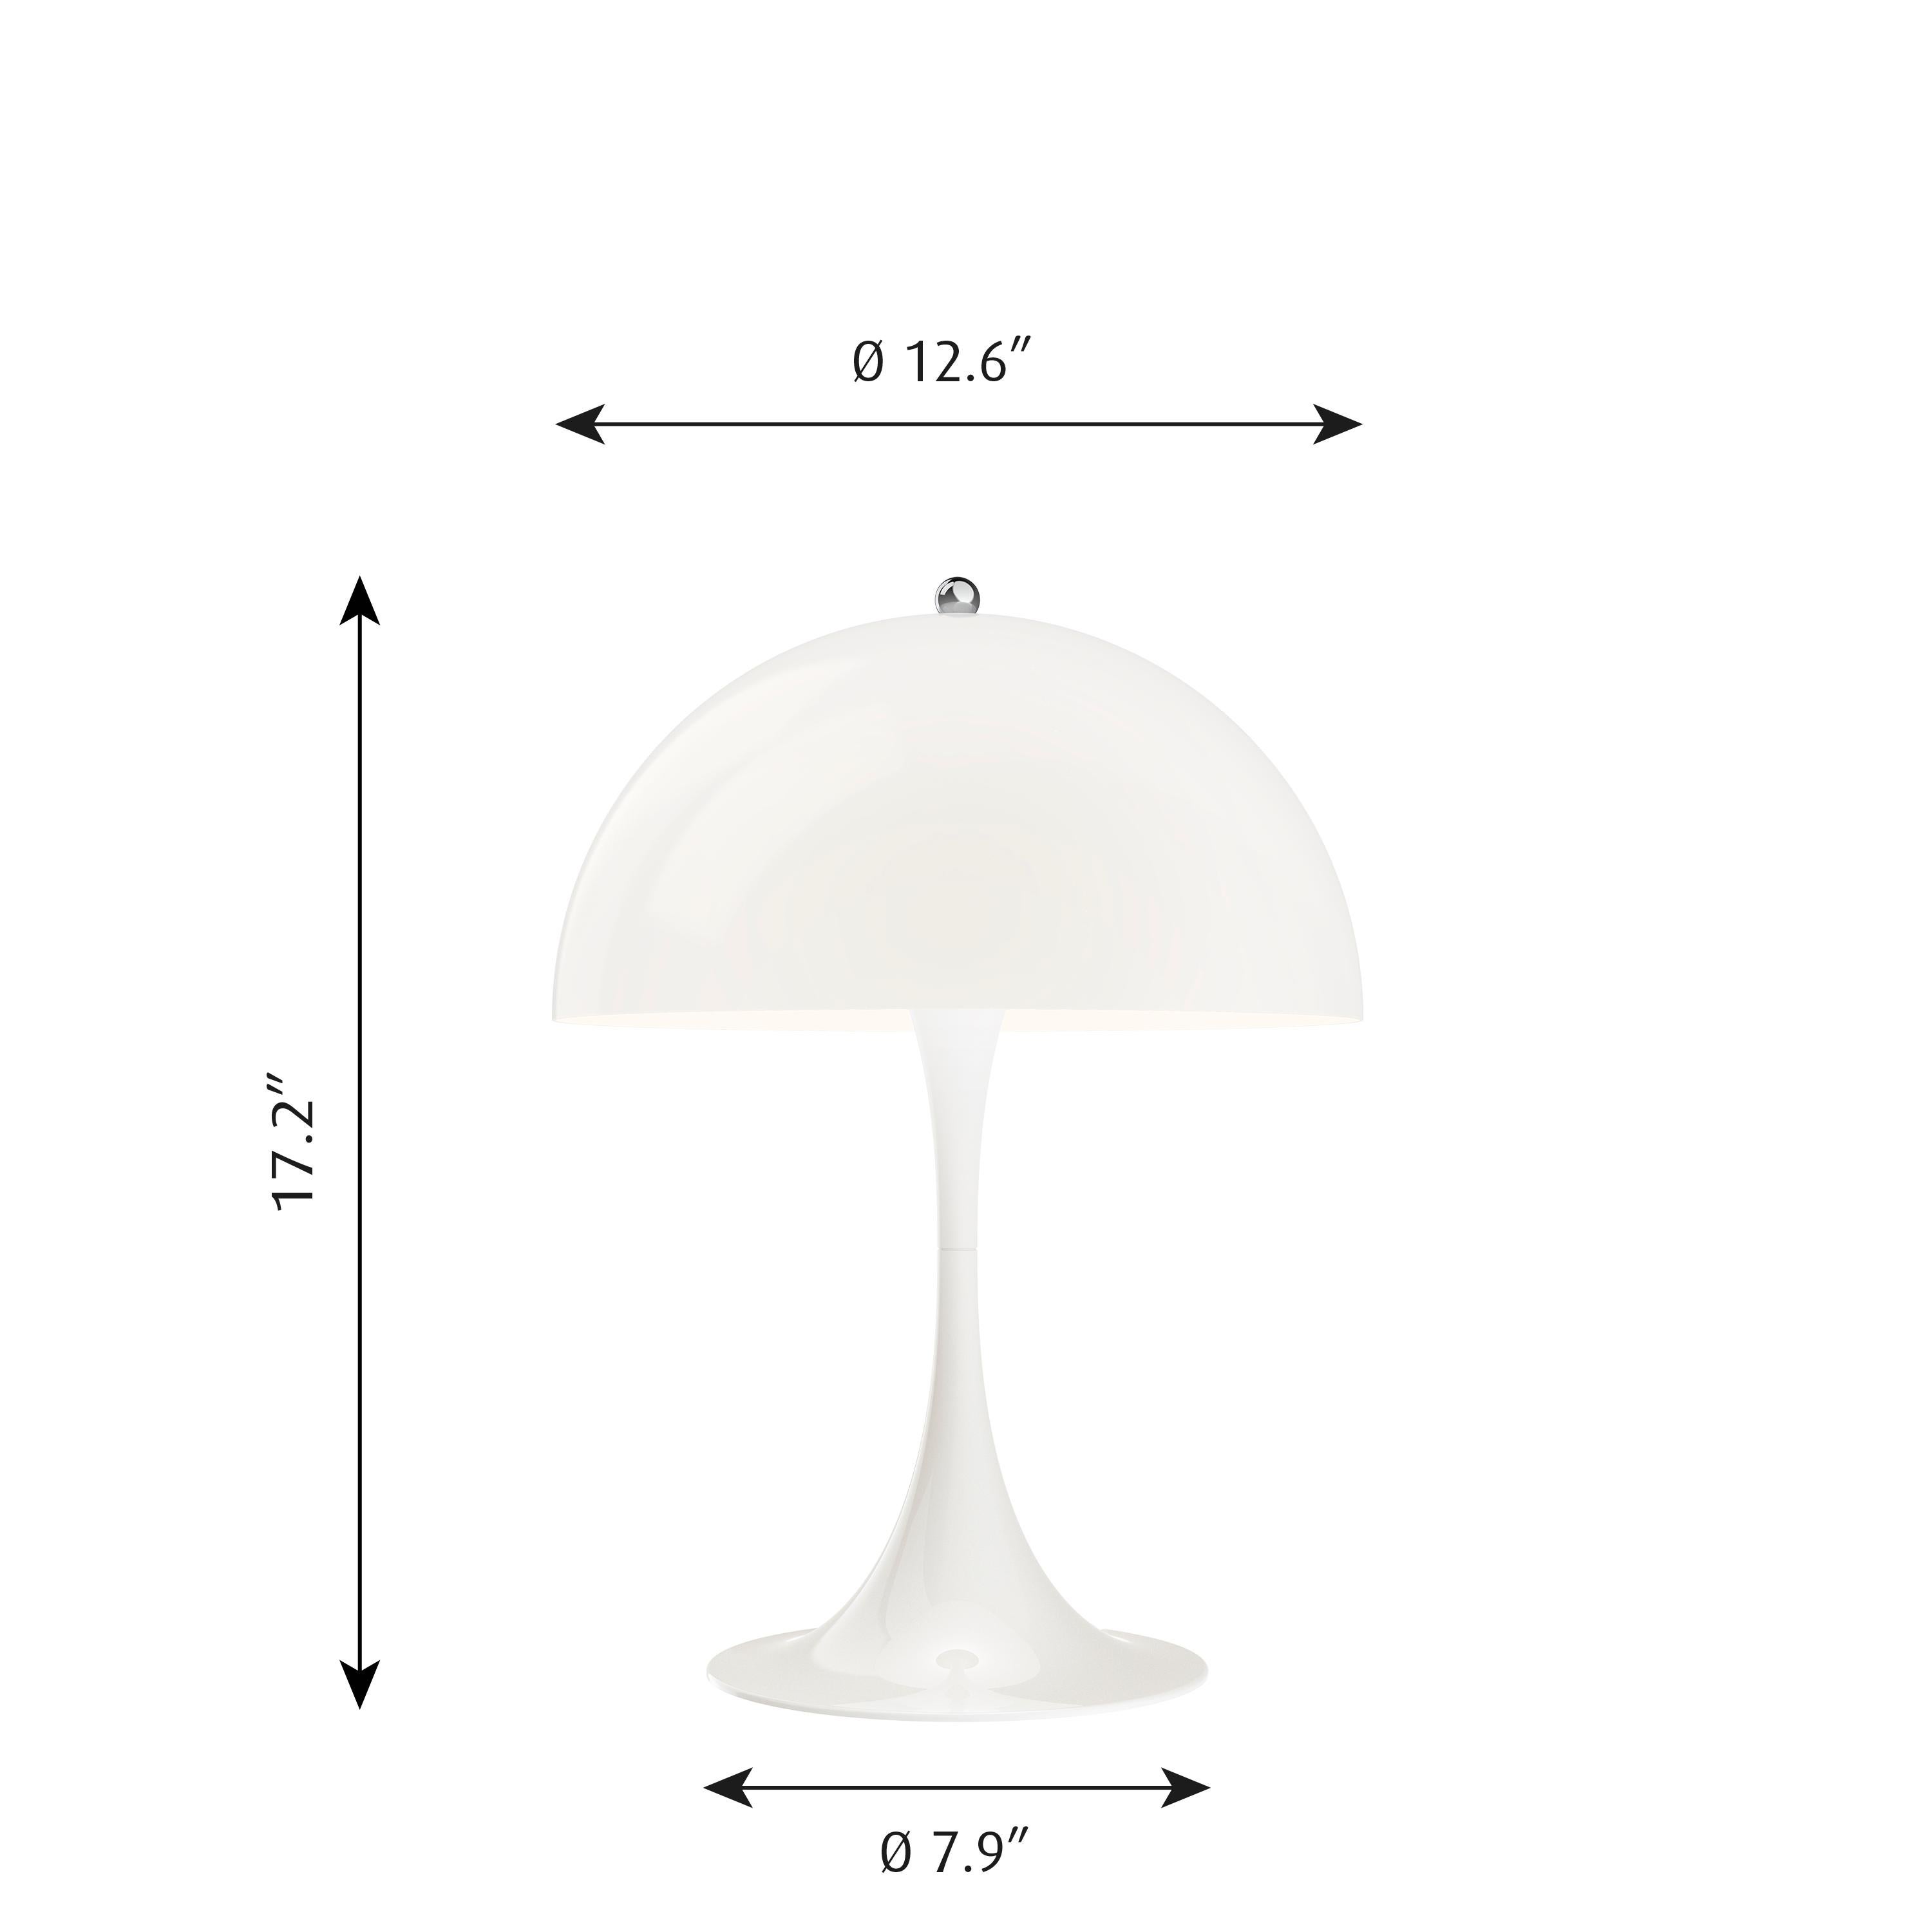 Lampe de table 'Panthella 320' de Verner Panton pour Louis Poulsen. La lampe de table Panthella 320 de taille moyenne utilise les dessins originaux de Verner Panton pour produire une lampe de forme organique avec un abat-jour en métal. La Panthella